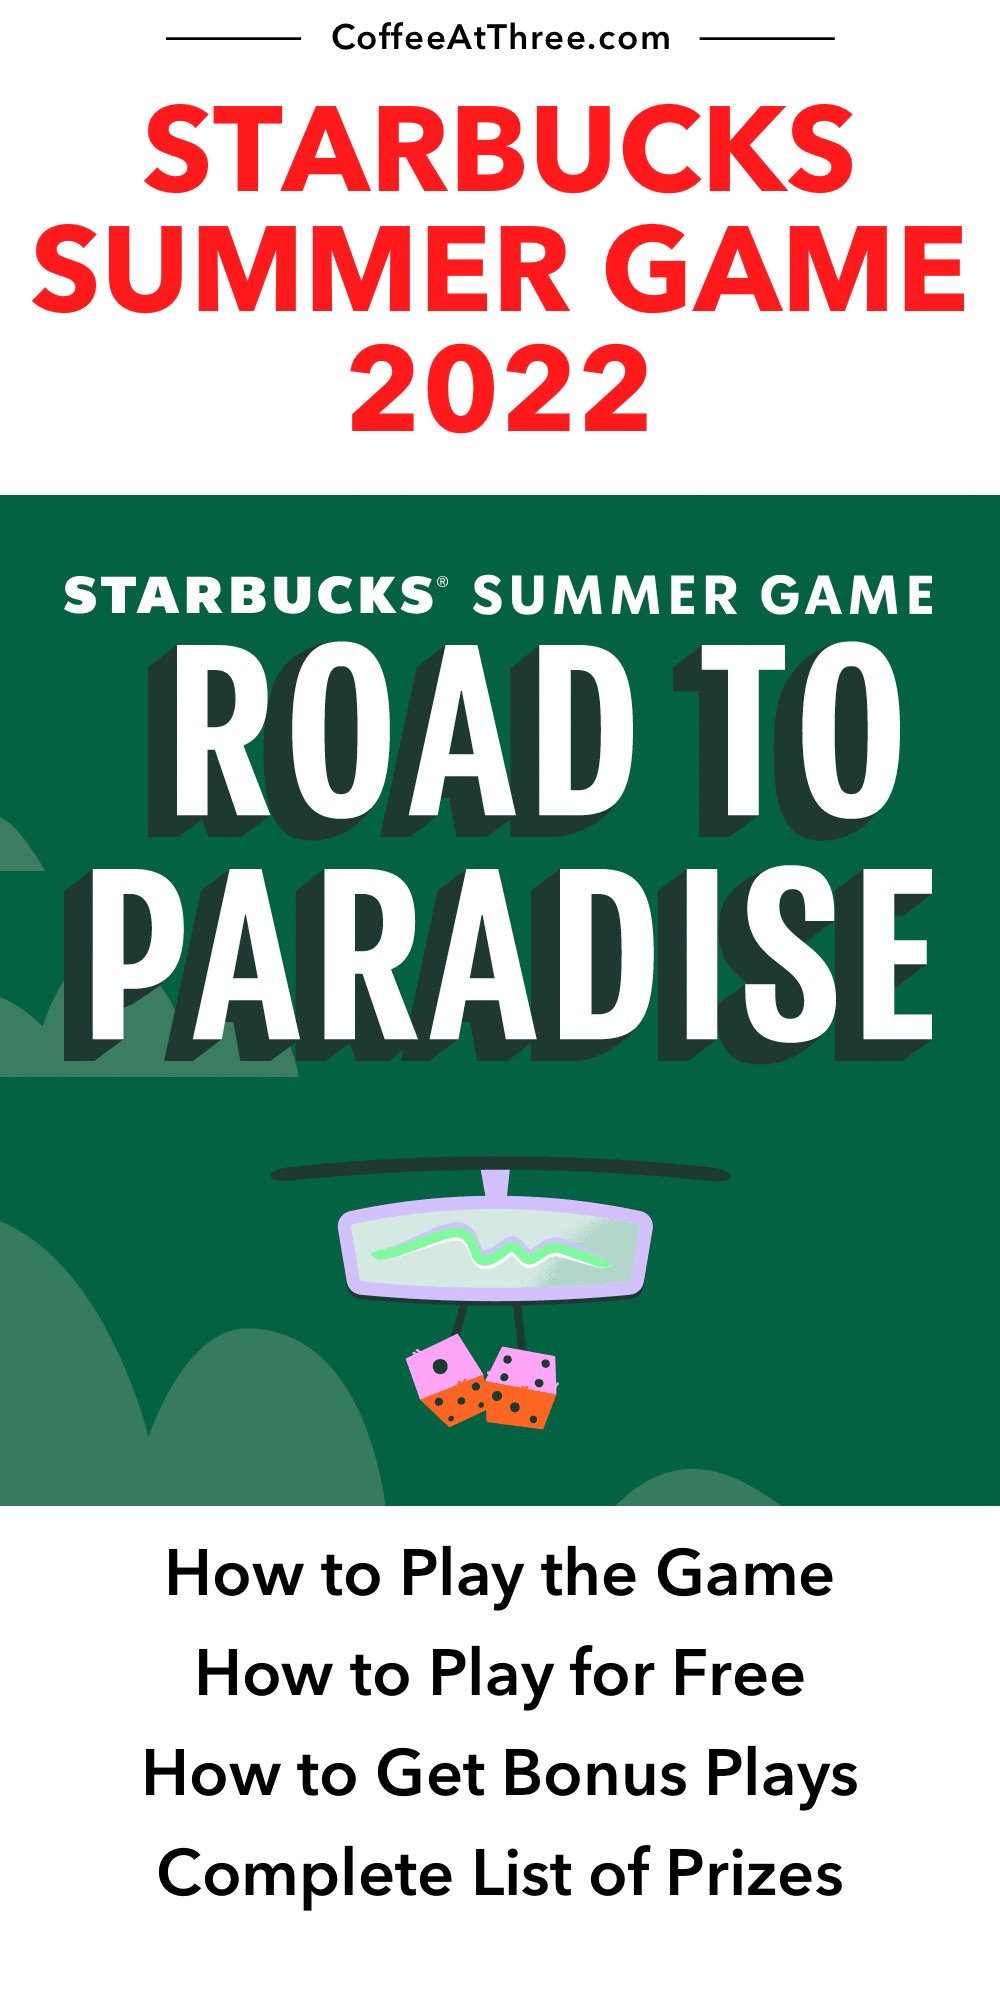 escaleren Voorbereiding Rook Starbucks Summer Game 2022: gratis spelen en prijzen - beedrop